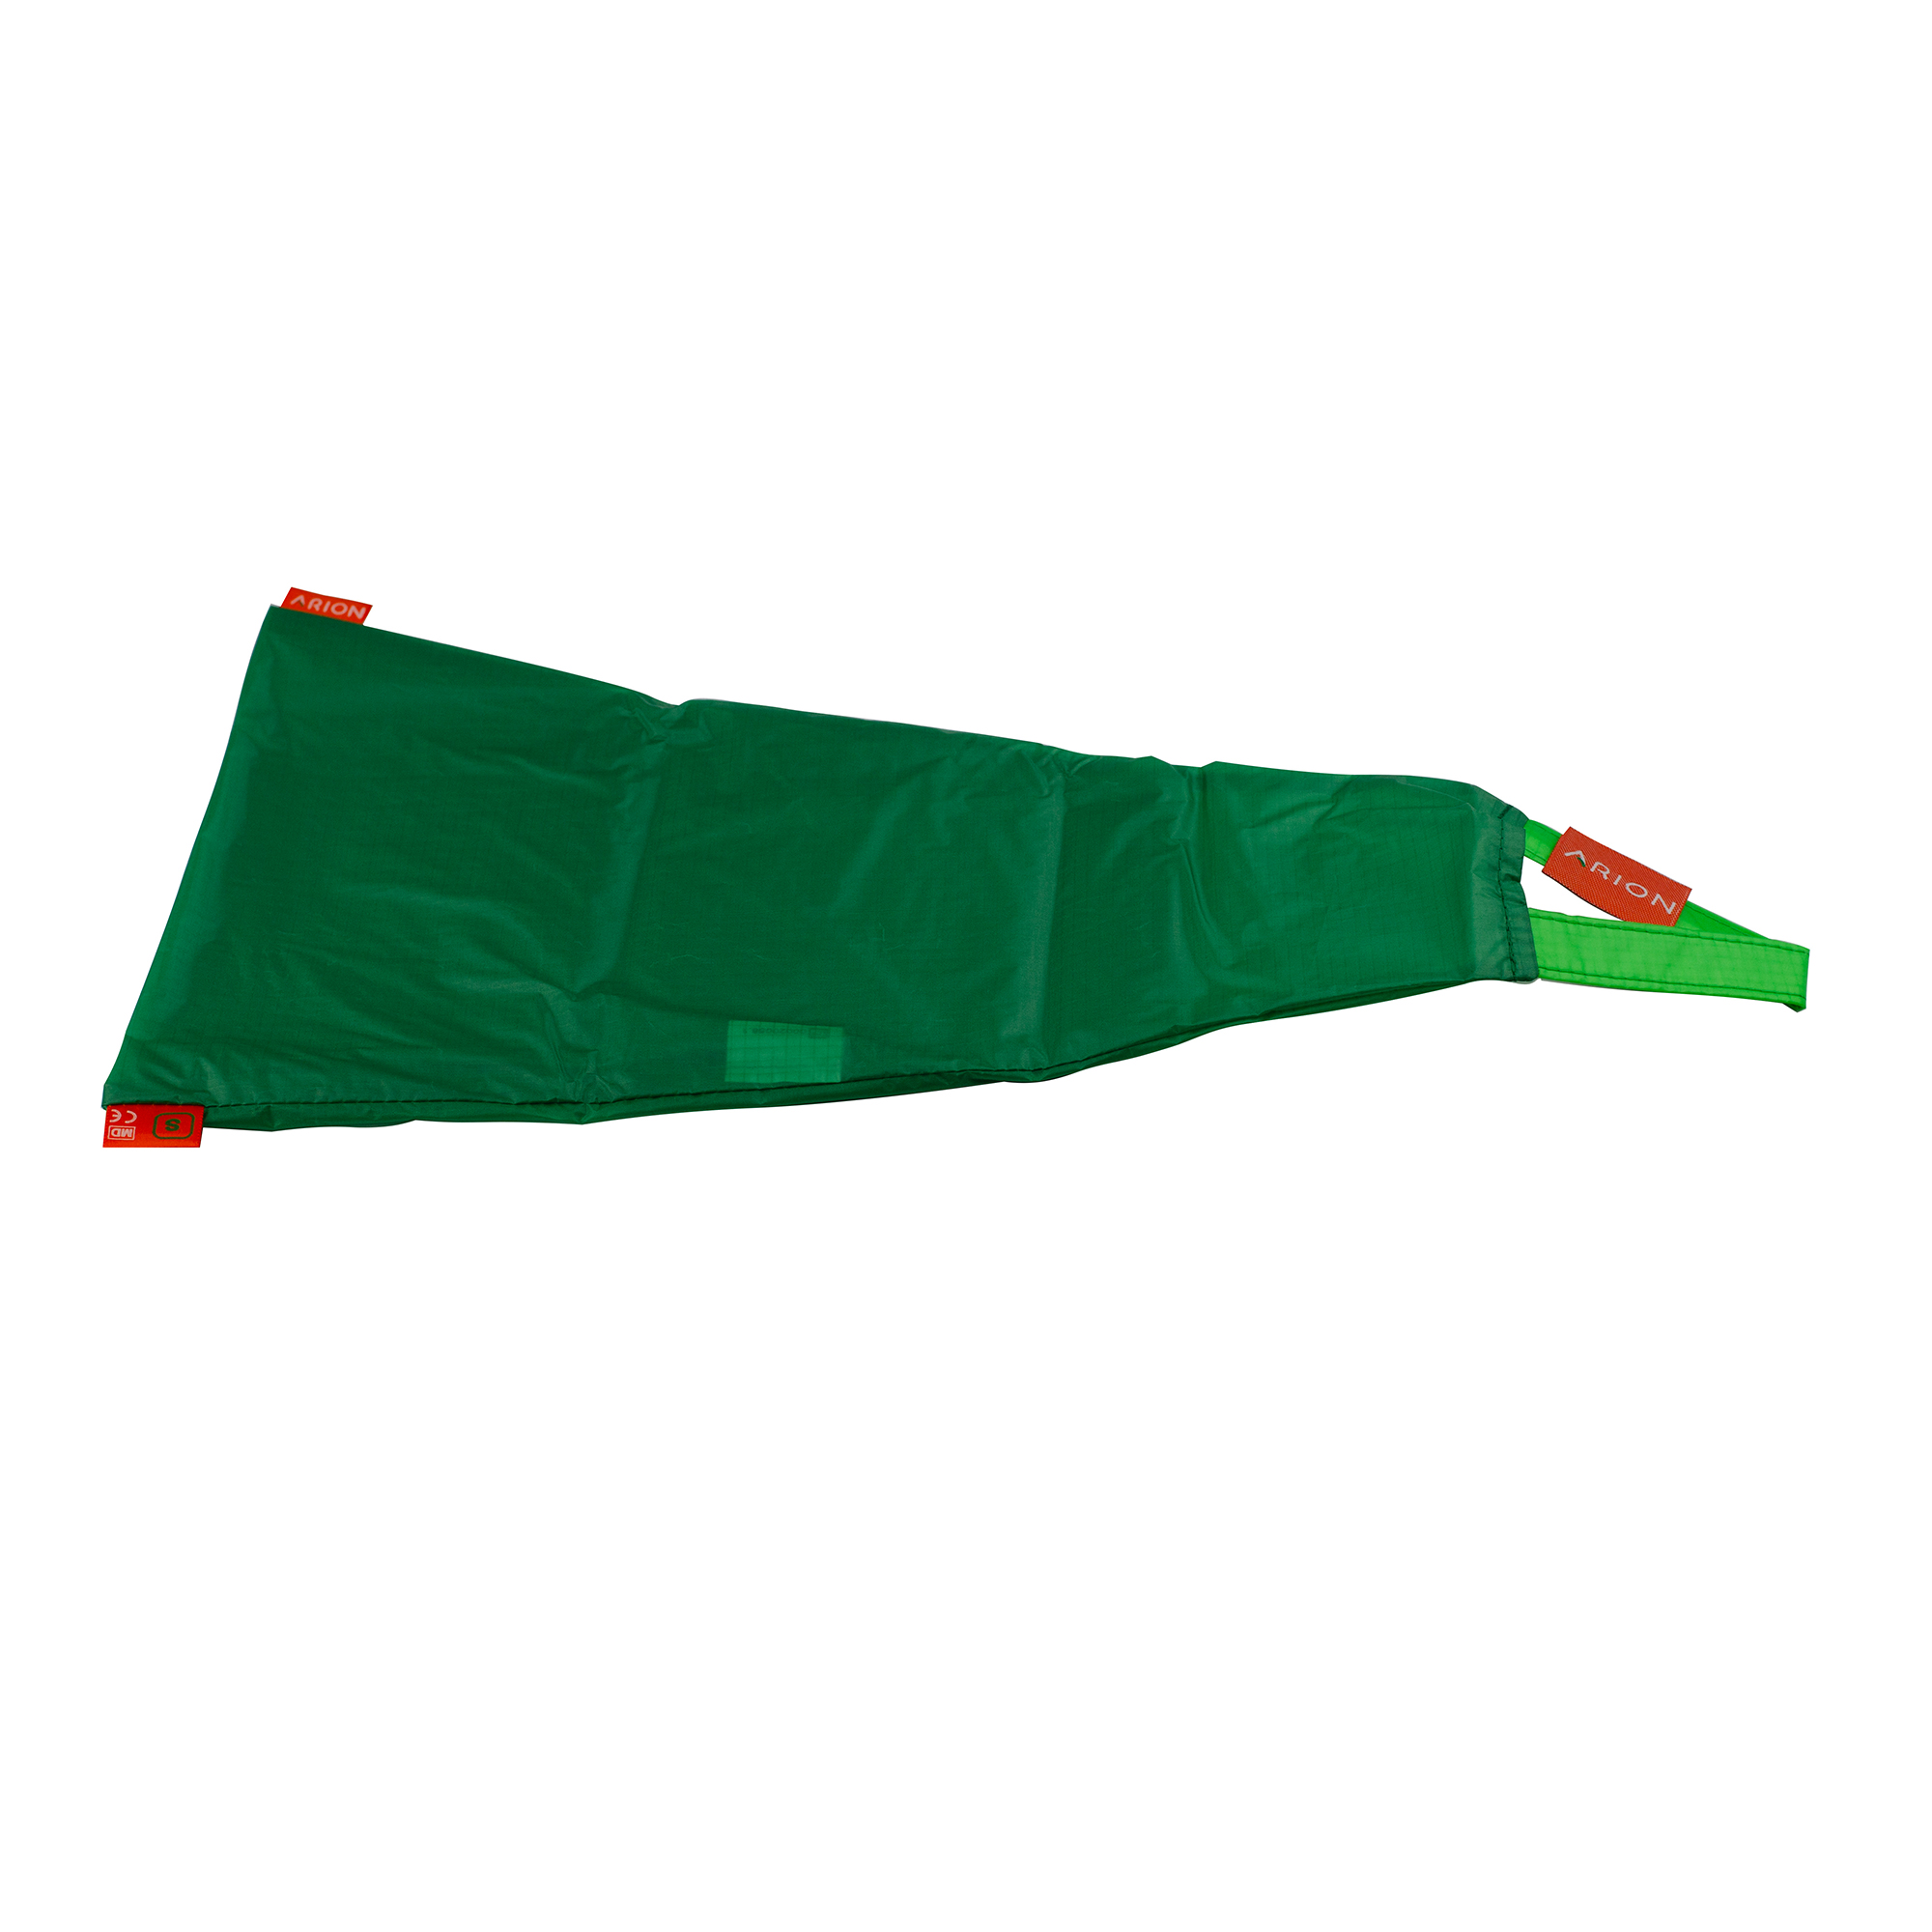 Sundo Arion Easy-Slide Dressing Aid, green, M Size 37-38.5